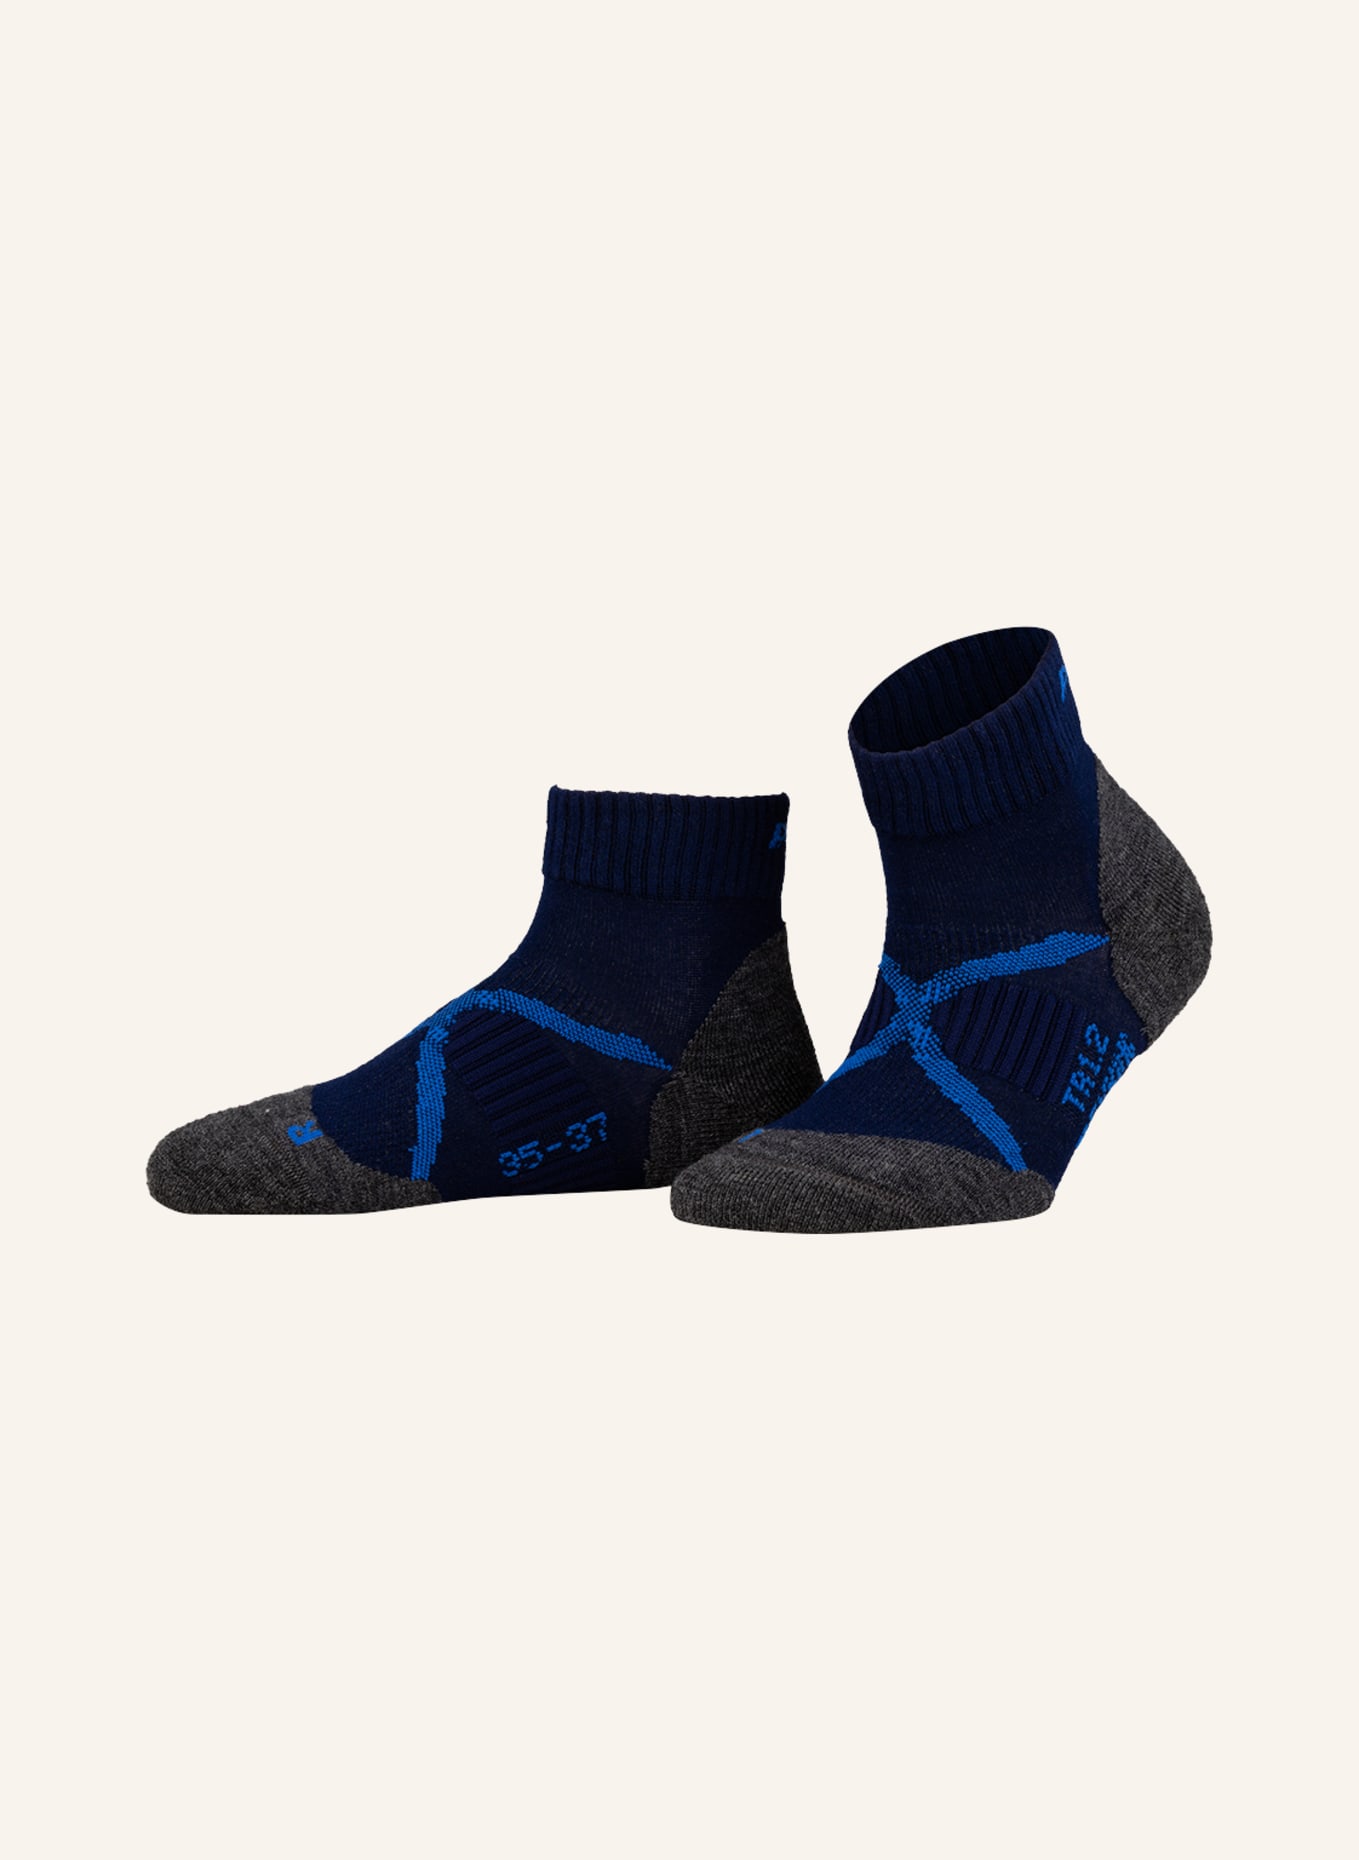 P.A.C. Trekking socks TR 1.2 MERINO SHORT COOL, Color: NAVY (Image 1)